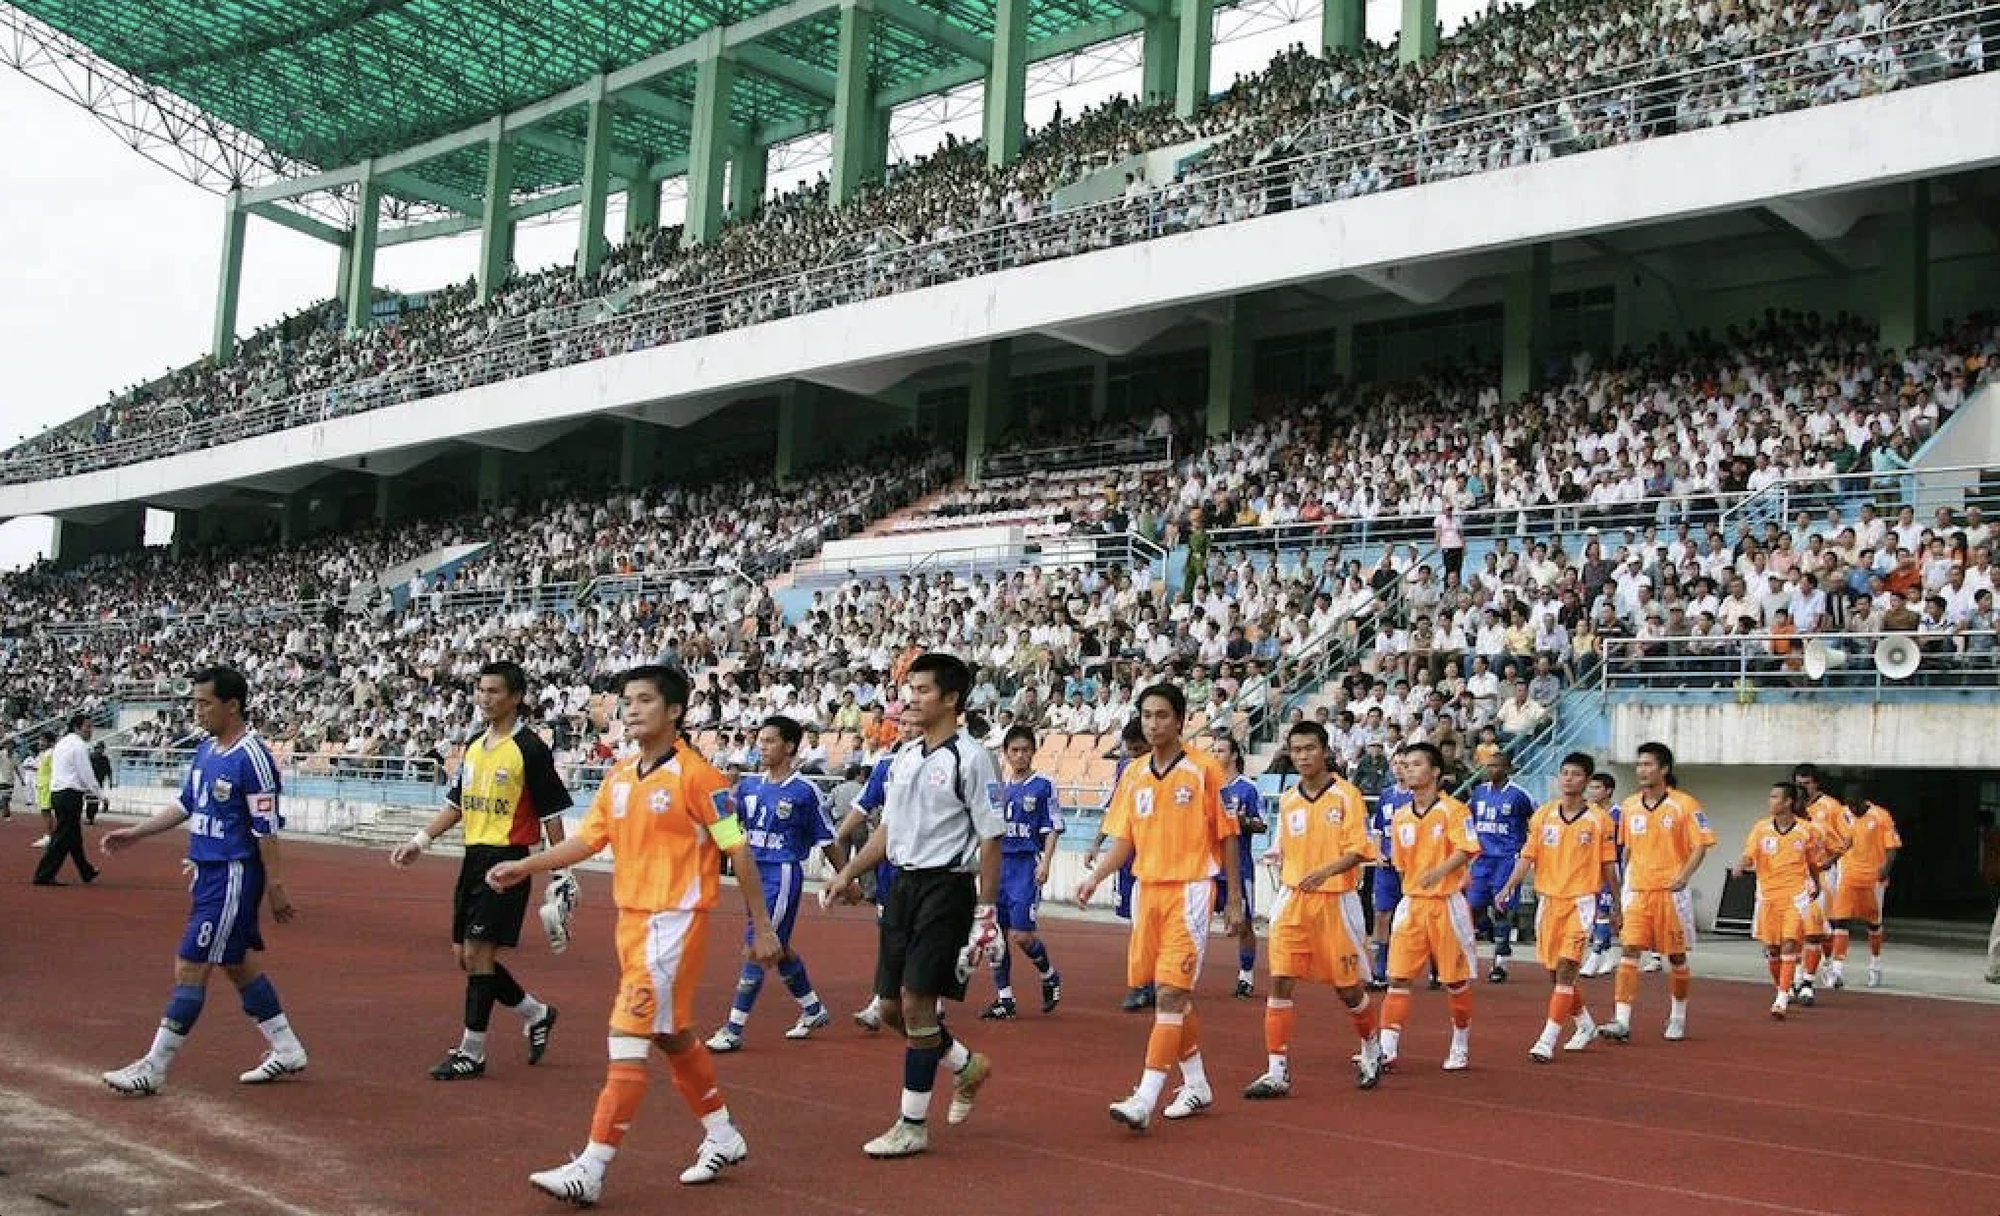 CLB Đà Nẵng muốn 'hồi sinh' sân Chi Lăng, biểu tượng bóng đá sông Hàn - Ảnh 1.